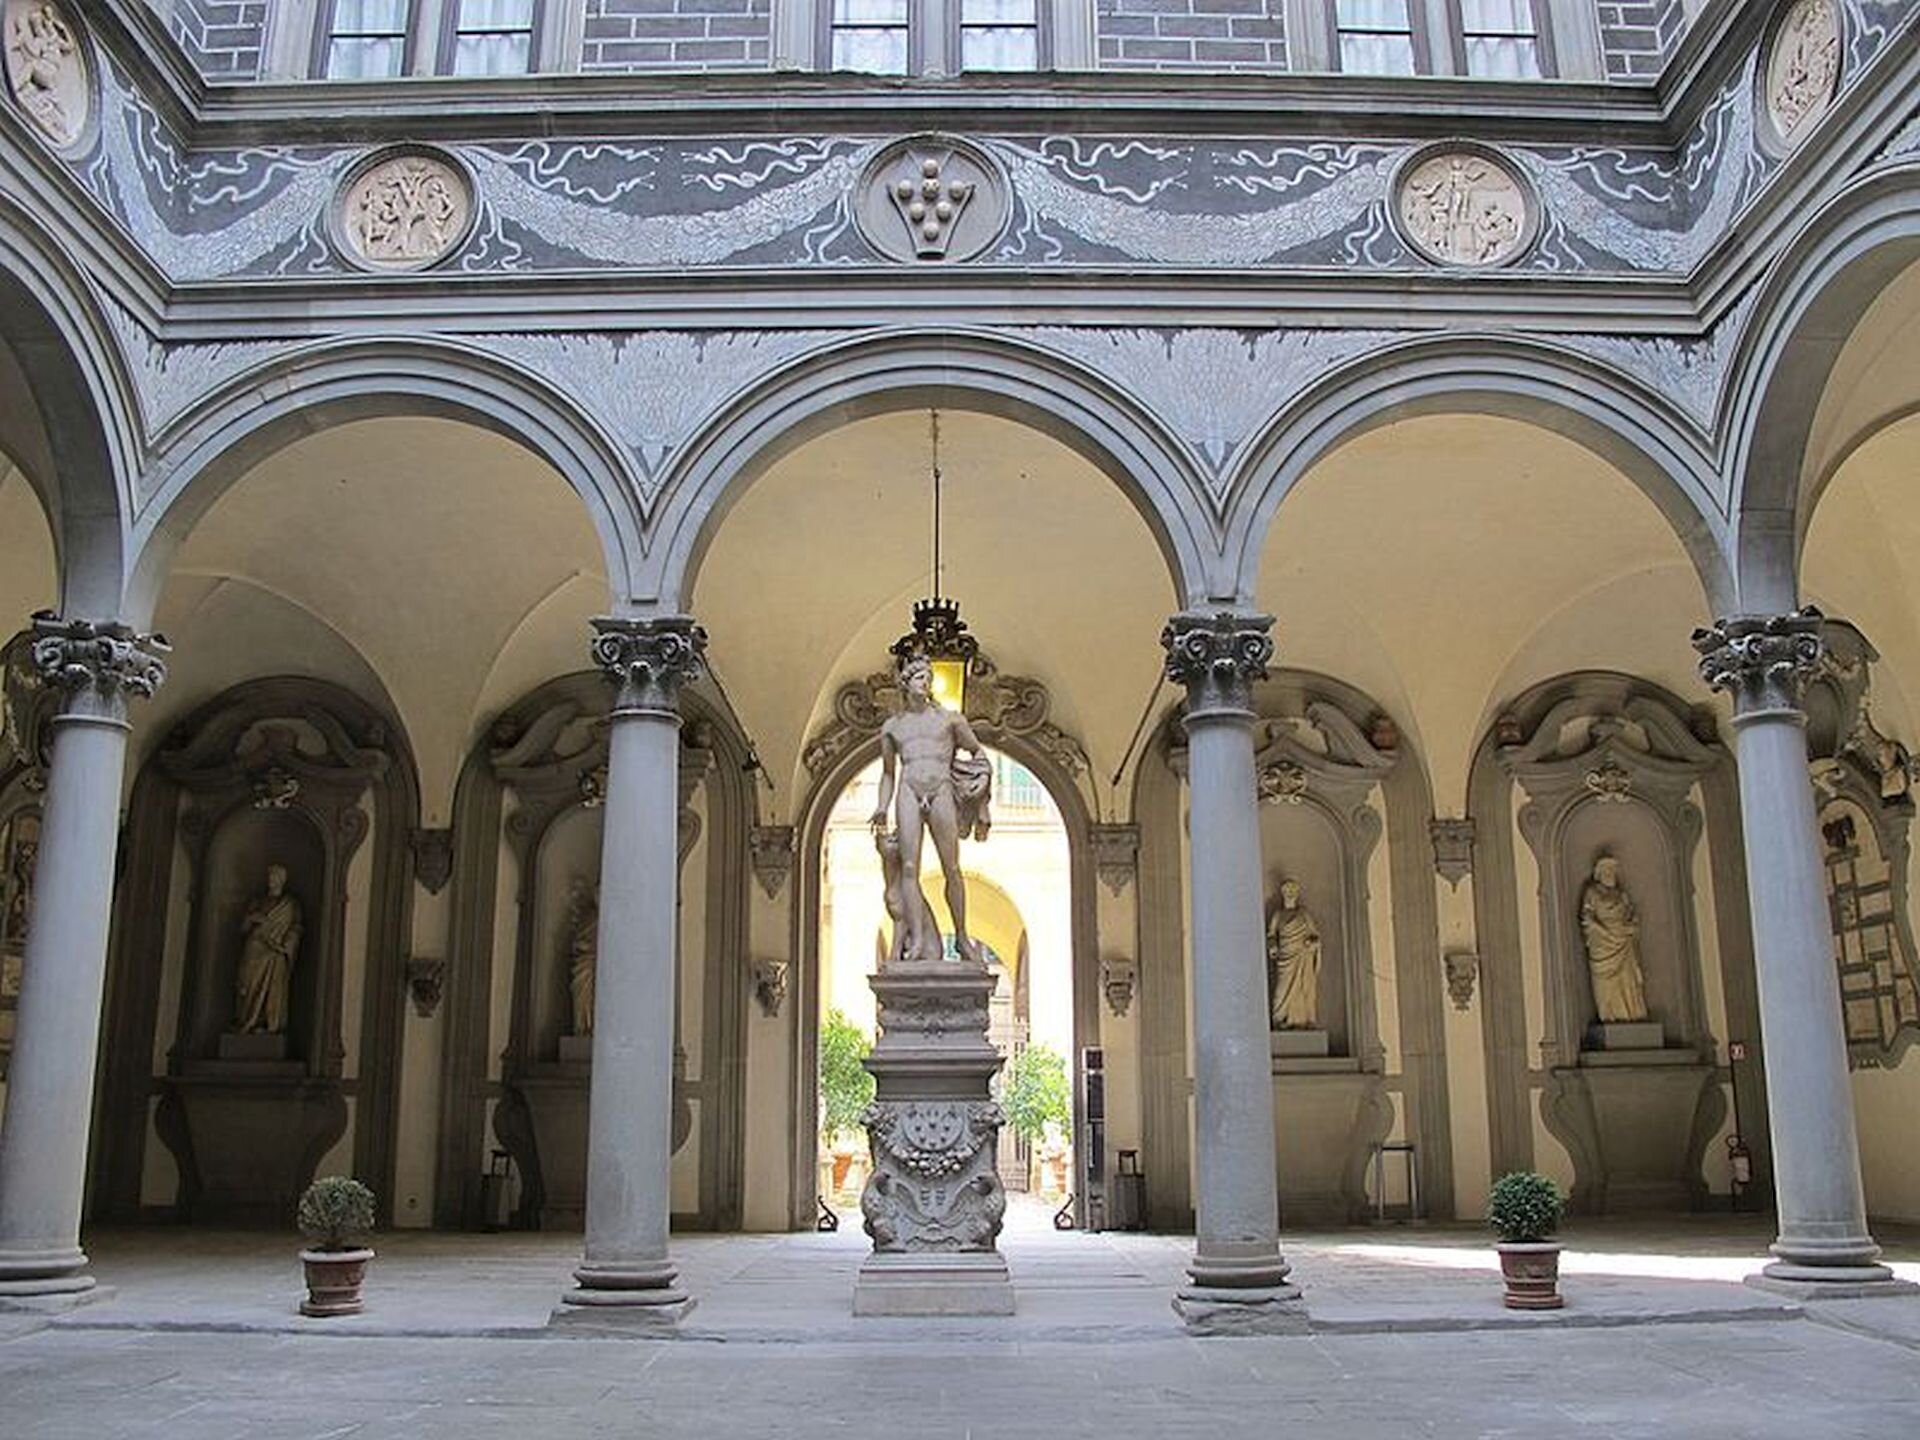 Ilustracja przedstawia zdjęcie wnętrza „Palazzo Medici” (Pałac Medyceuszy) we Florencji. Na ilustracji widoczna jest ogromne pomieszczeni z kolumnadą oraz łagodnymi łukami. Pasmo fryzu ciągnącego się ponad nimi udekorowane jest okrągłymi medalionami, połączonymi namalowanym motywem girland. Wnętrze medalionów wypełniają płaskorzeźbione motywy i sceny. Wnętrze zdobią także rzeźby antyczne. Poniżej został ukaazany czarno-biały rysunek przedstawiający florenckiego rzeźbiarza, architekta i inżyniera Filippo Brunelleschi.